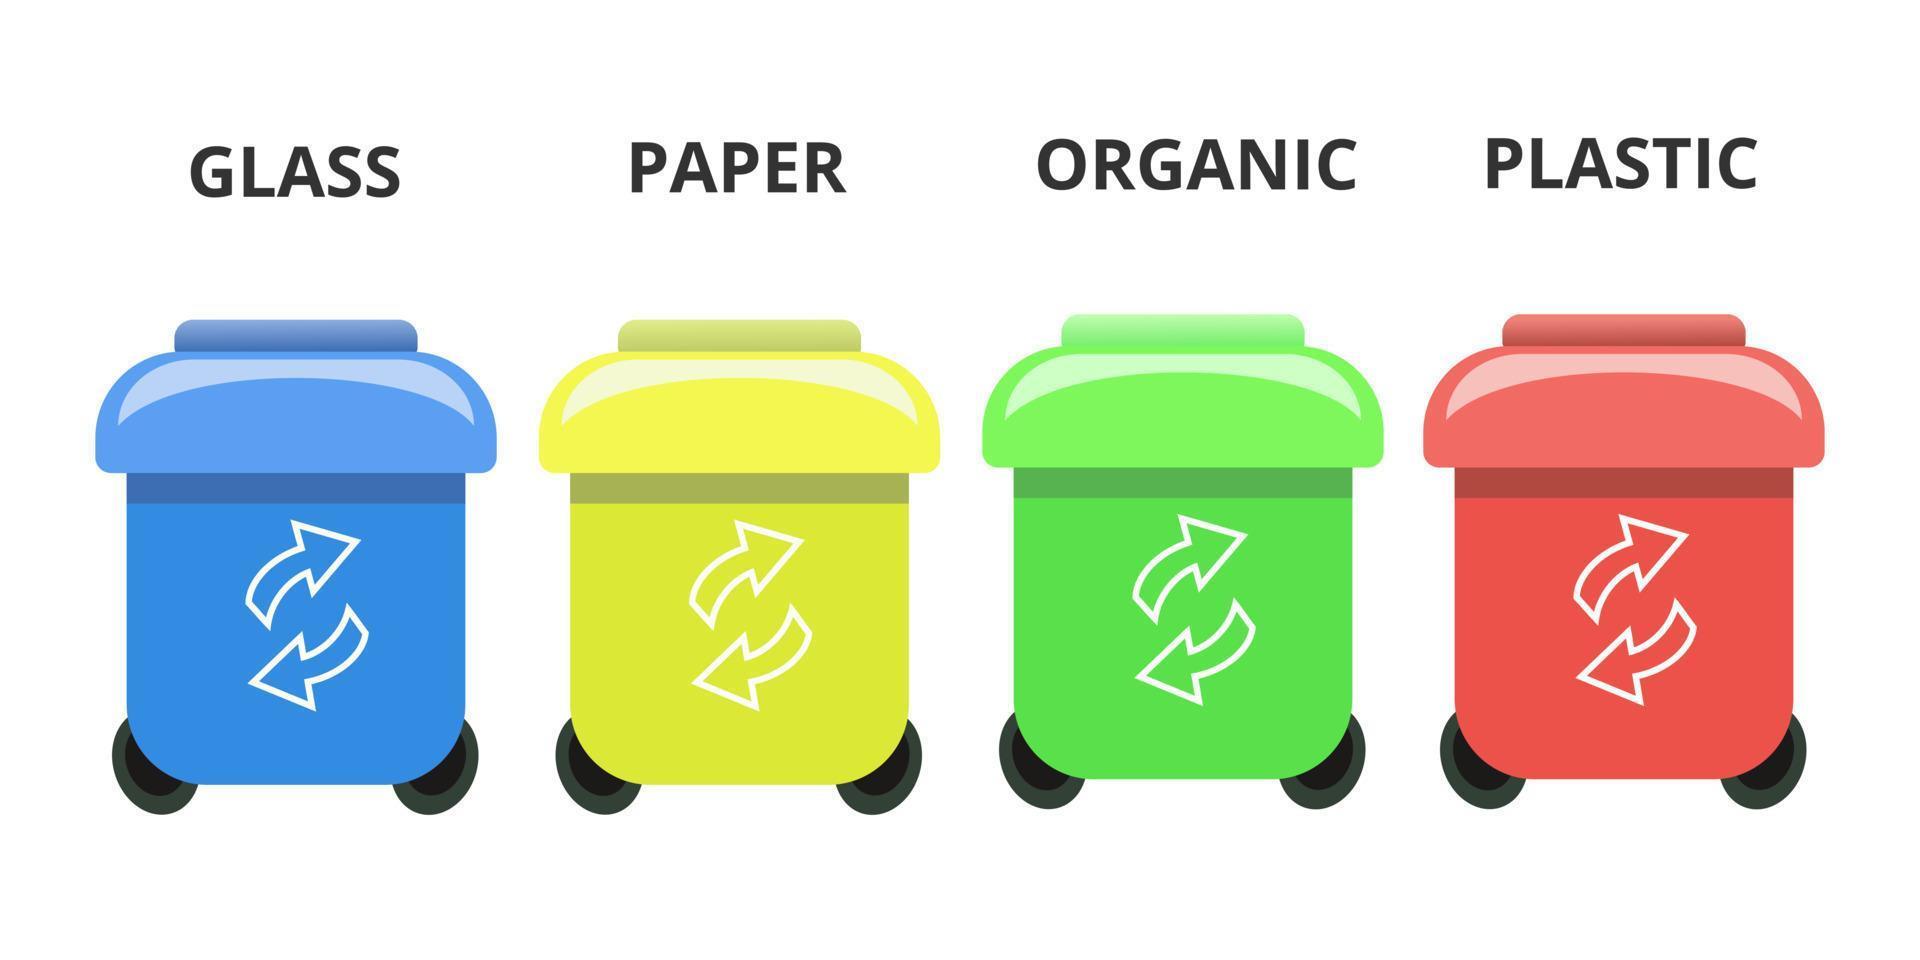 vuilnis sorteren container kan organisch plastic glas papier verschillende pictogrammenset kleurrijke illustratie concept vector